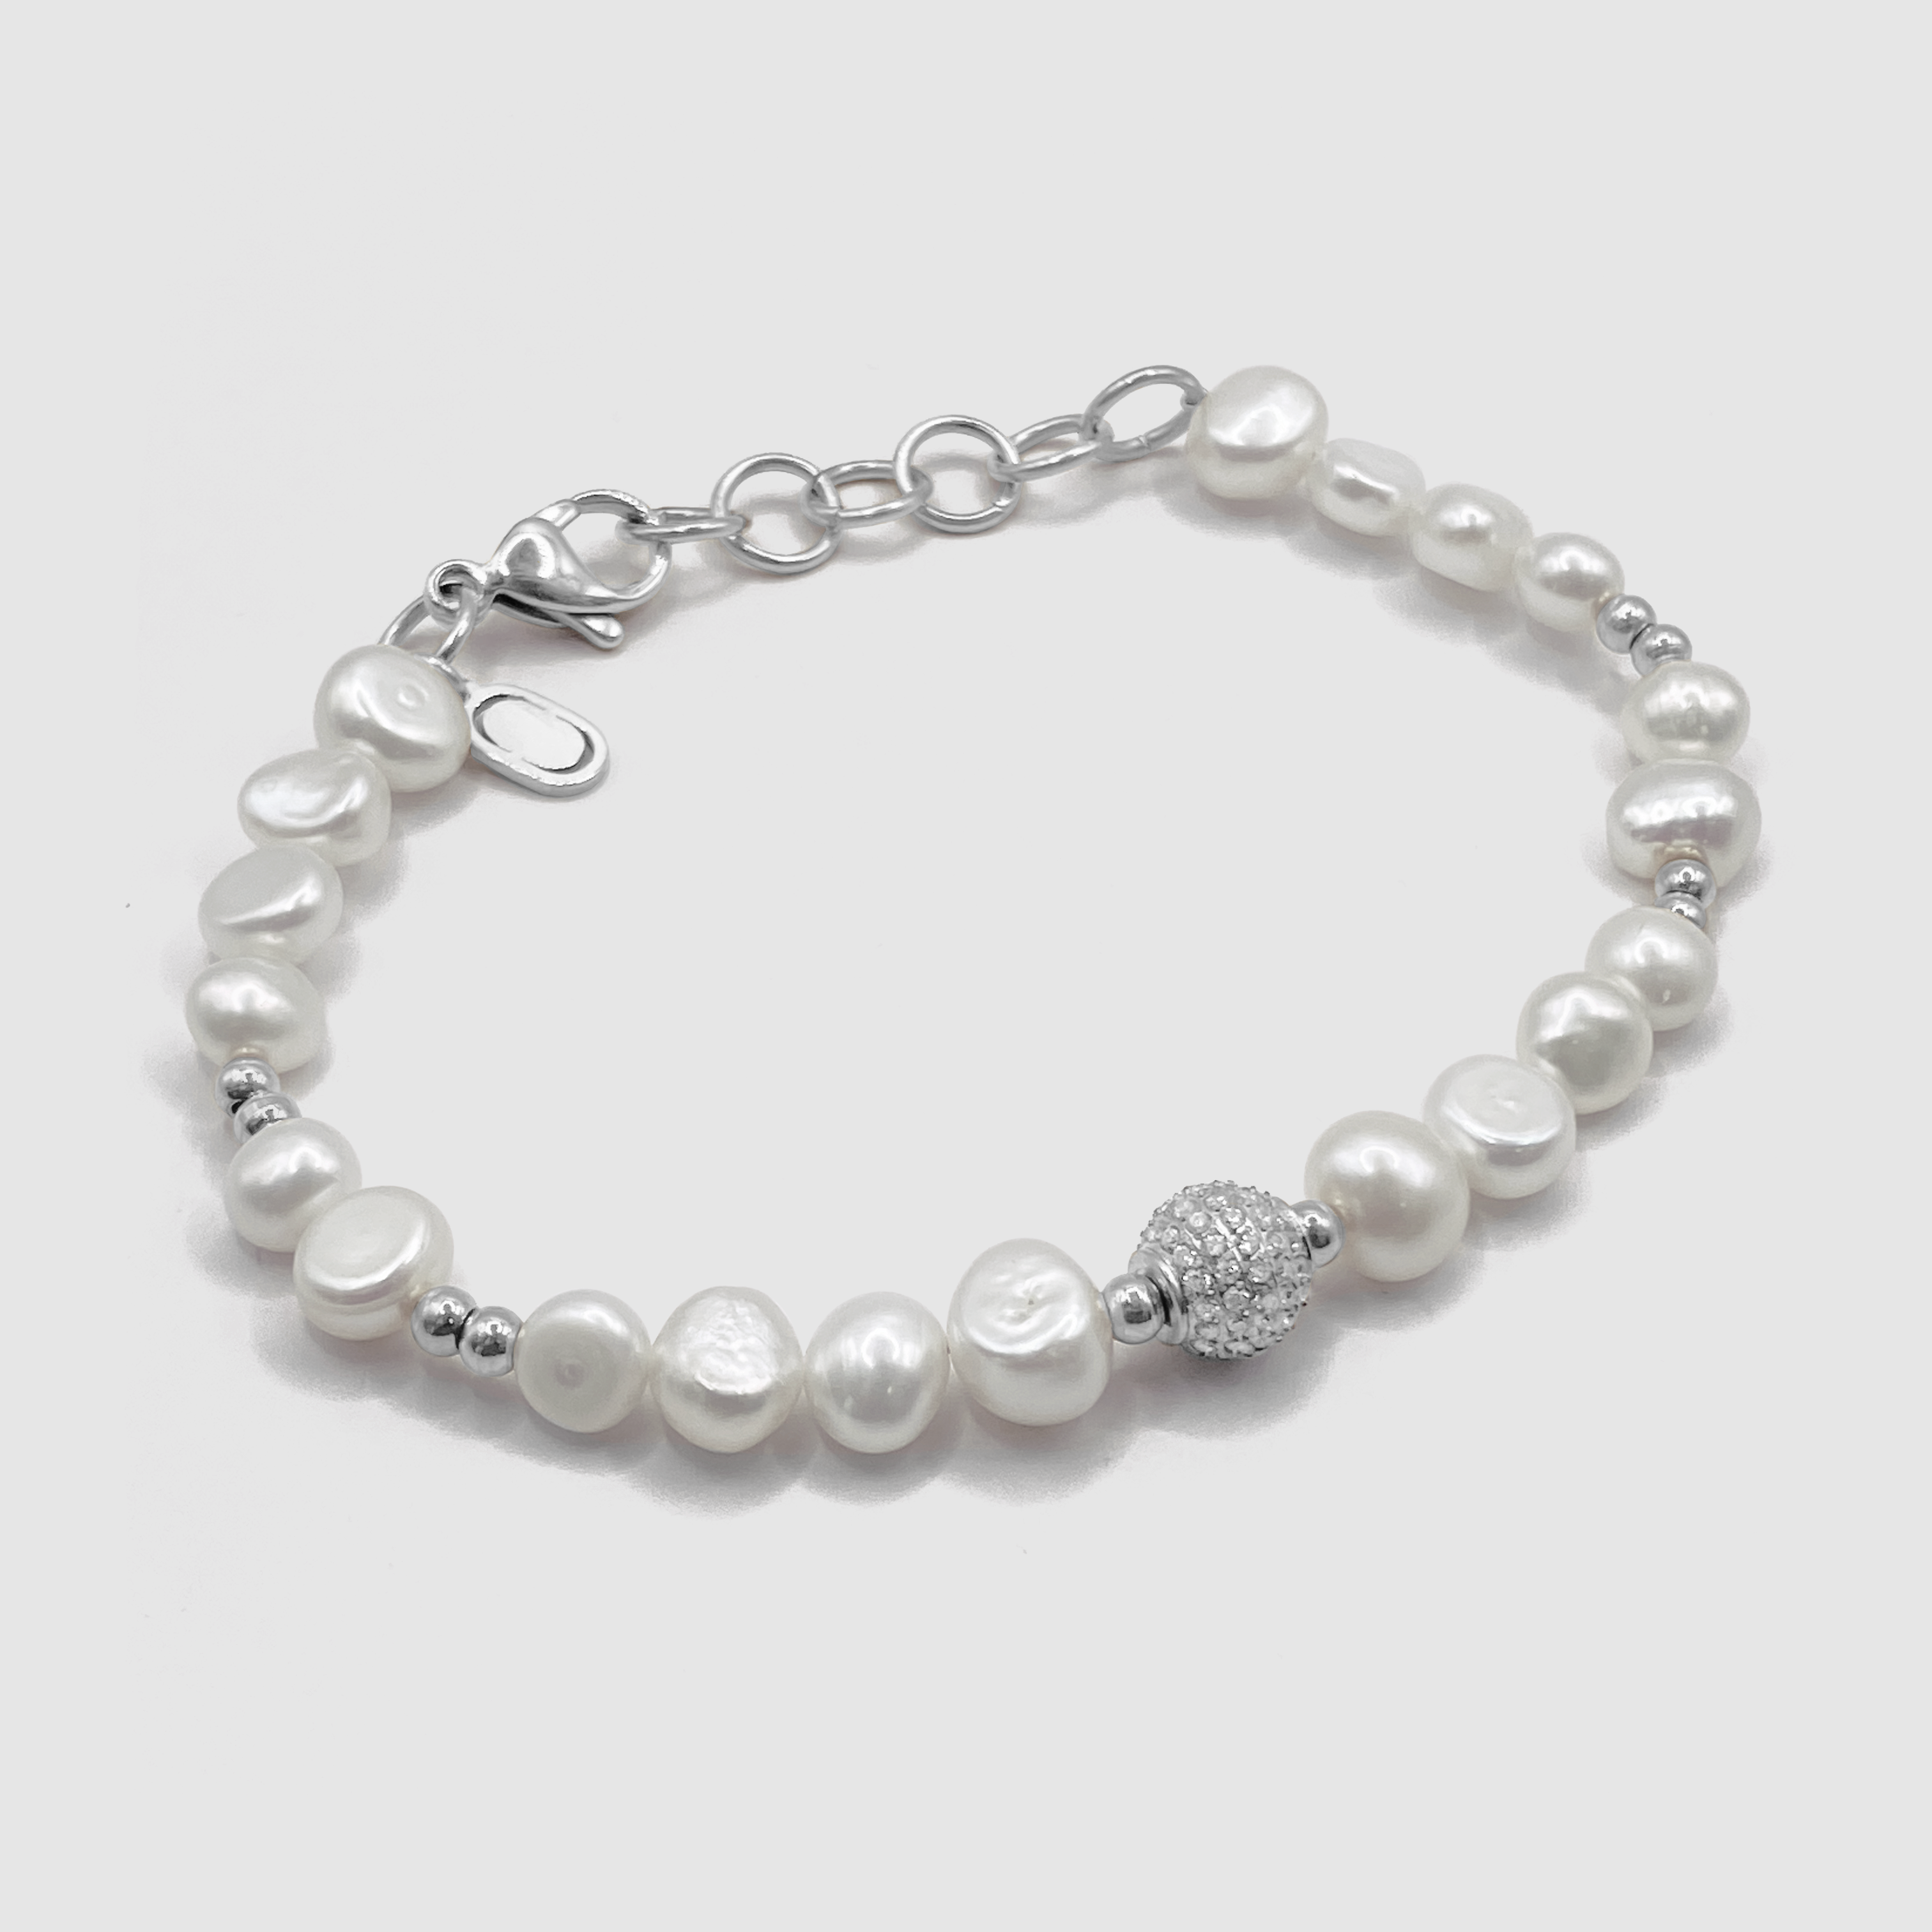 Armband Aus Echten Perlen Mit Eisperlen (Silber)